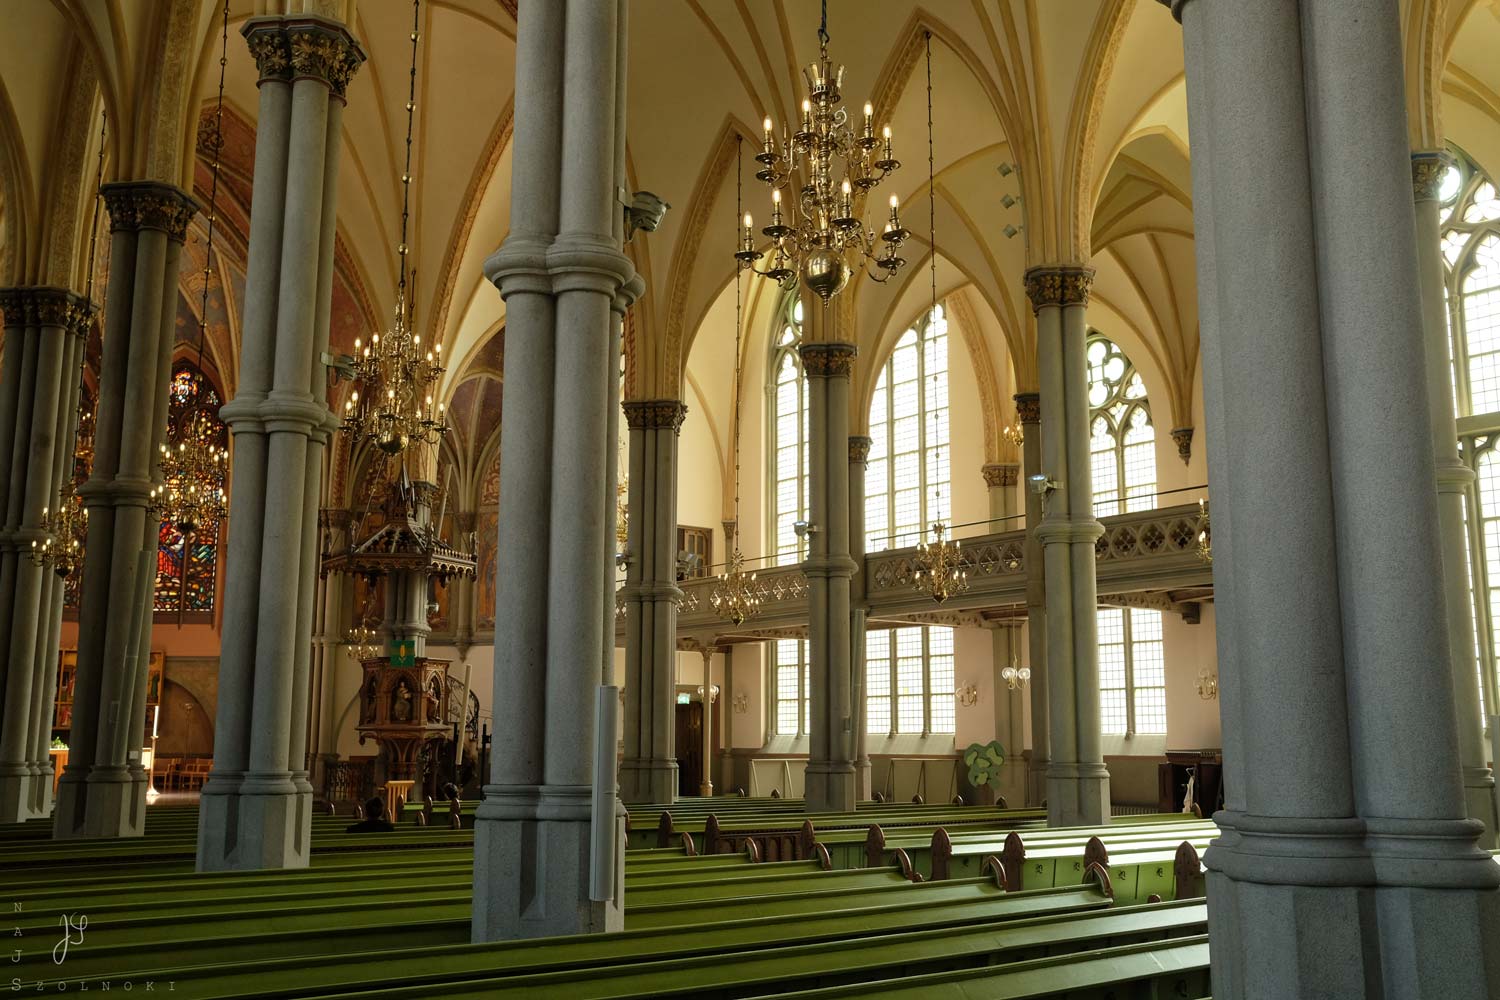 Graue, schlanke, hochaufschießende Bündelsäulen mit filigranem, beige-gelbem, gotischem Gewölbe - dabei weiches Licht mit sanften Schatten- und Lichtbereichen.